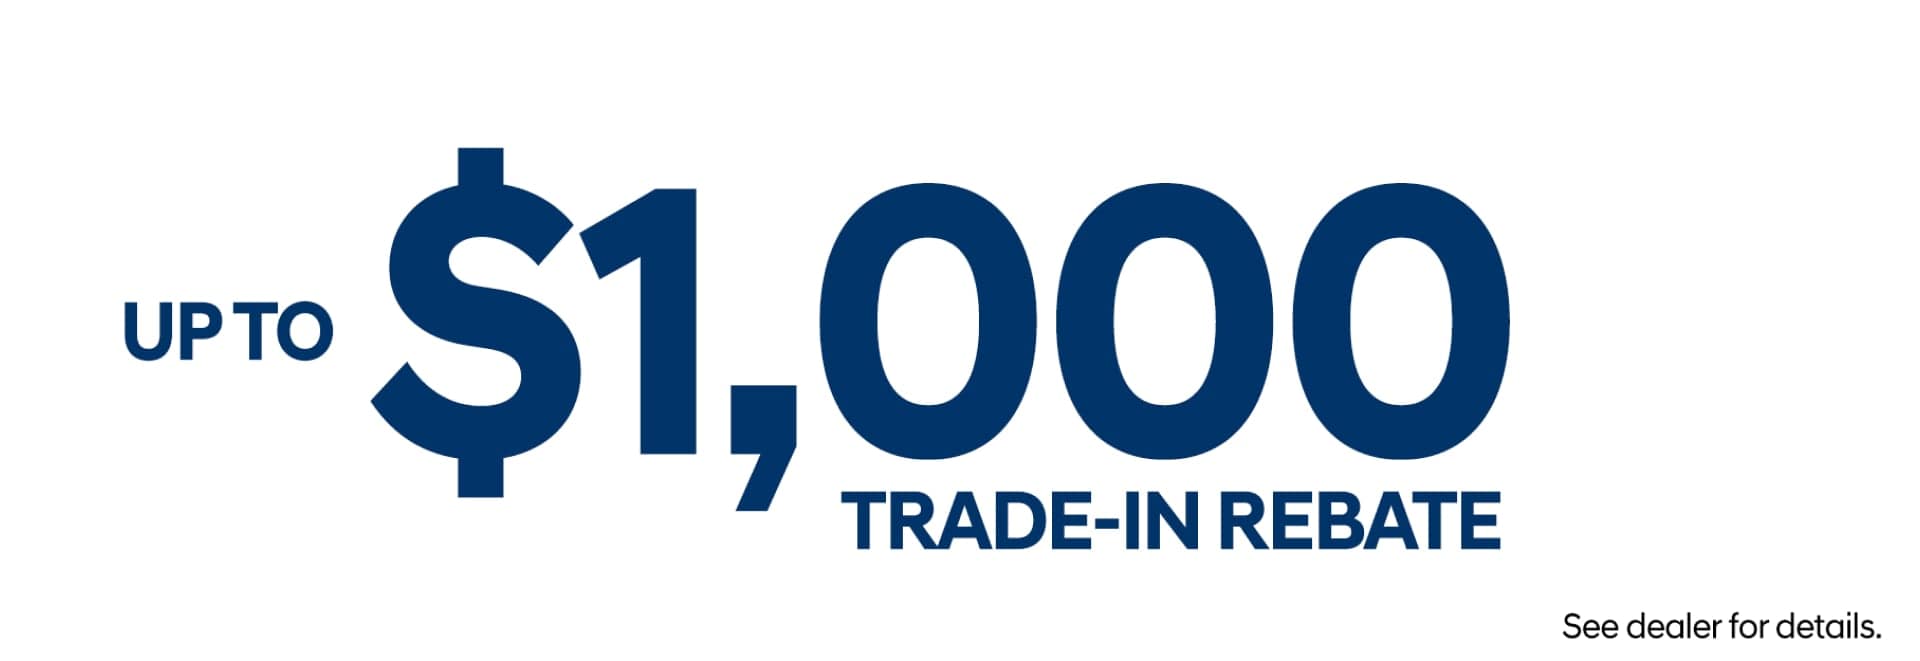 1000 trade-in rebate for Shottenkirk Hyundai Rome